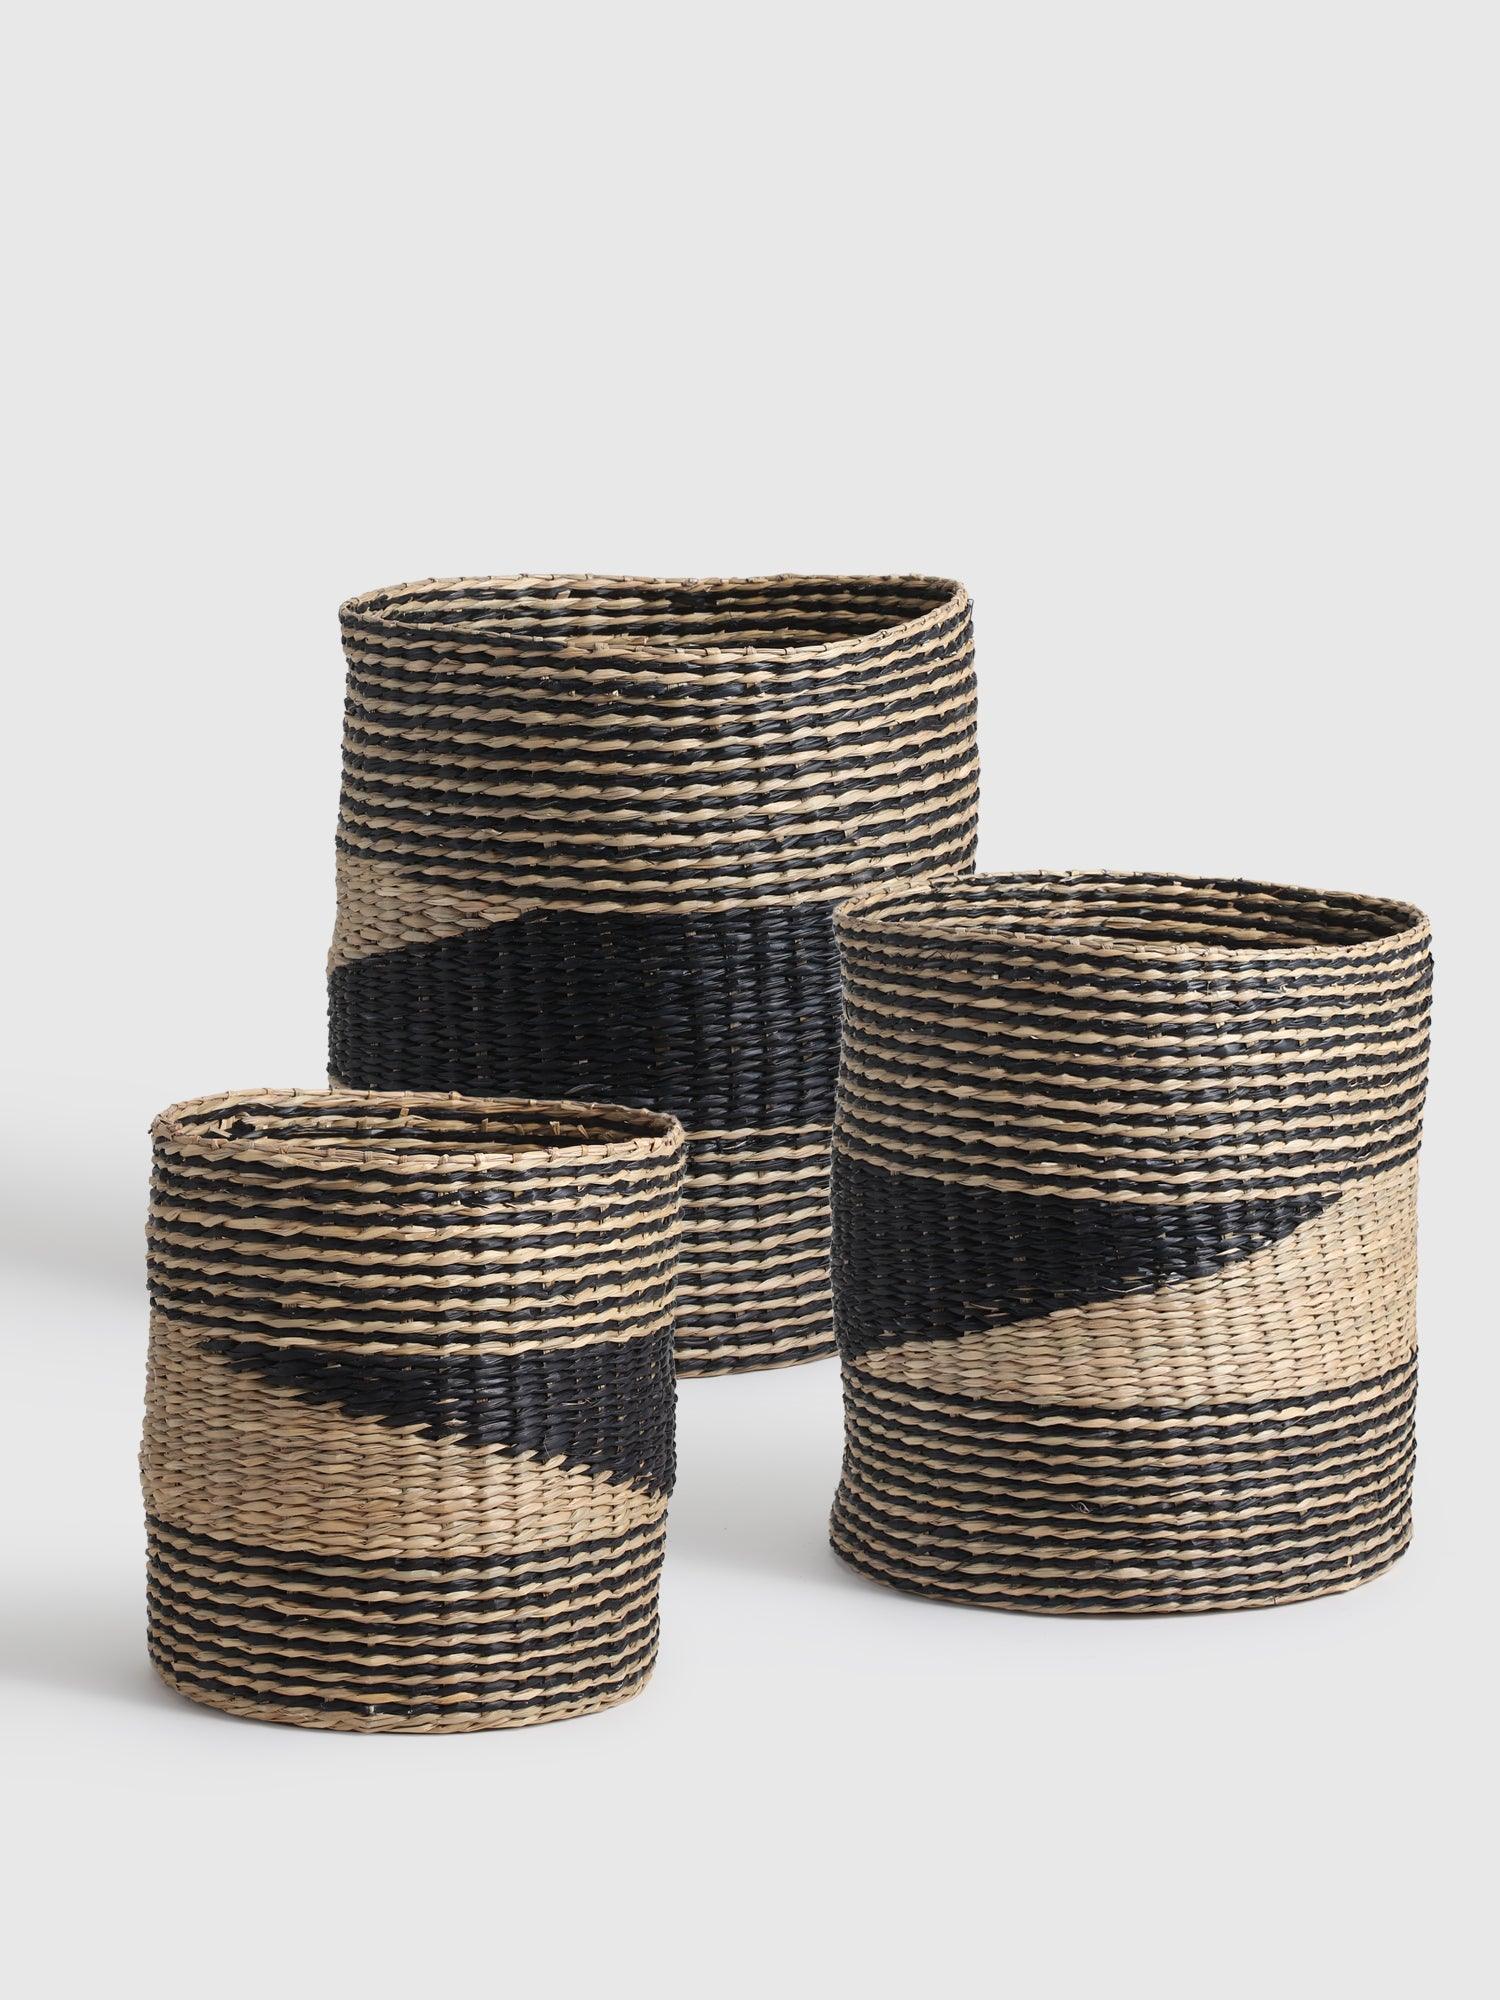 Mulan Seagrass Basket set of 3